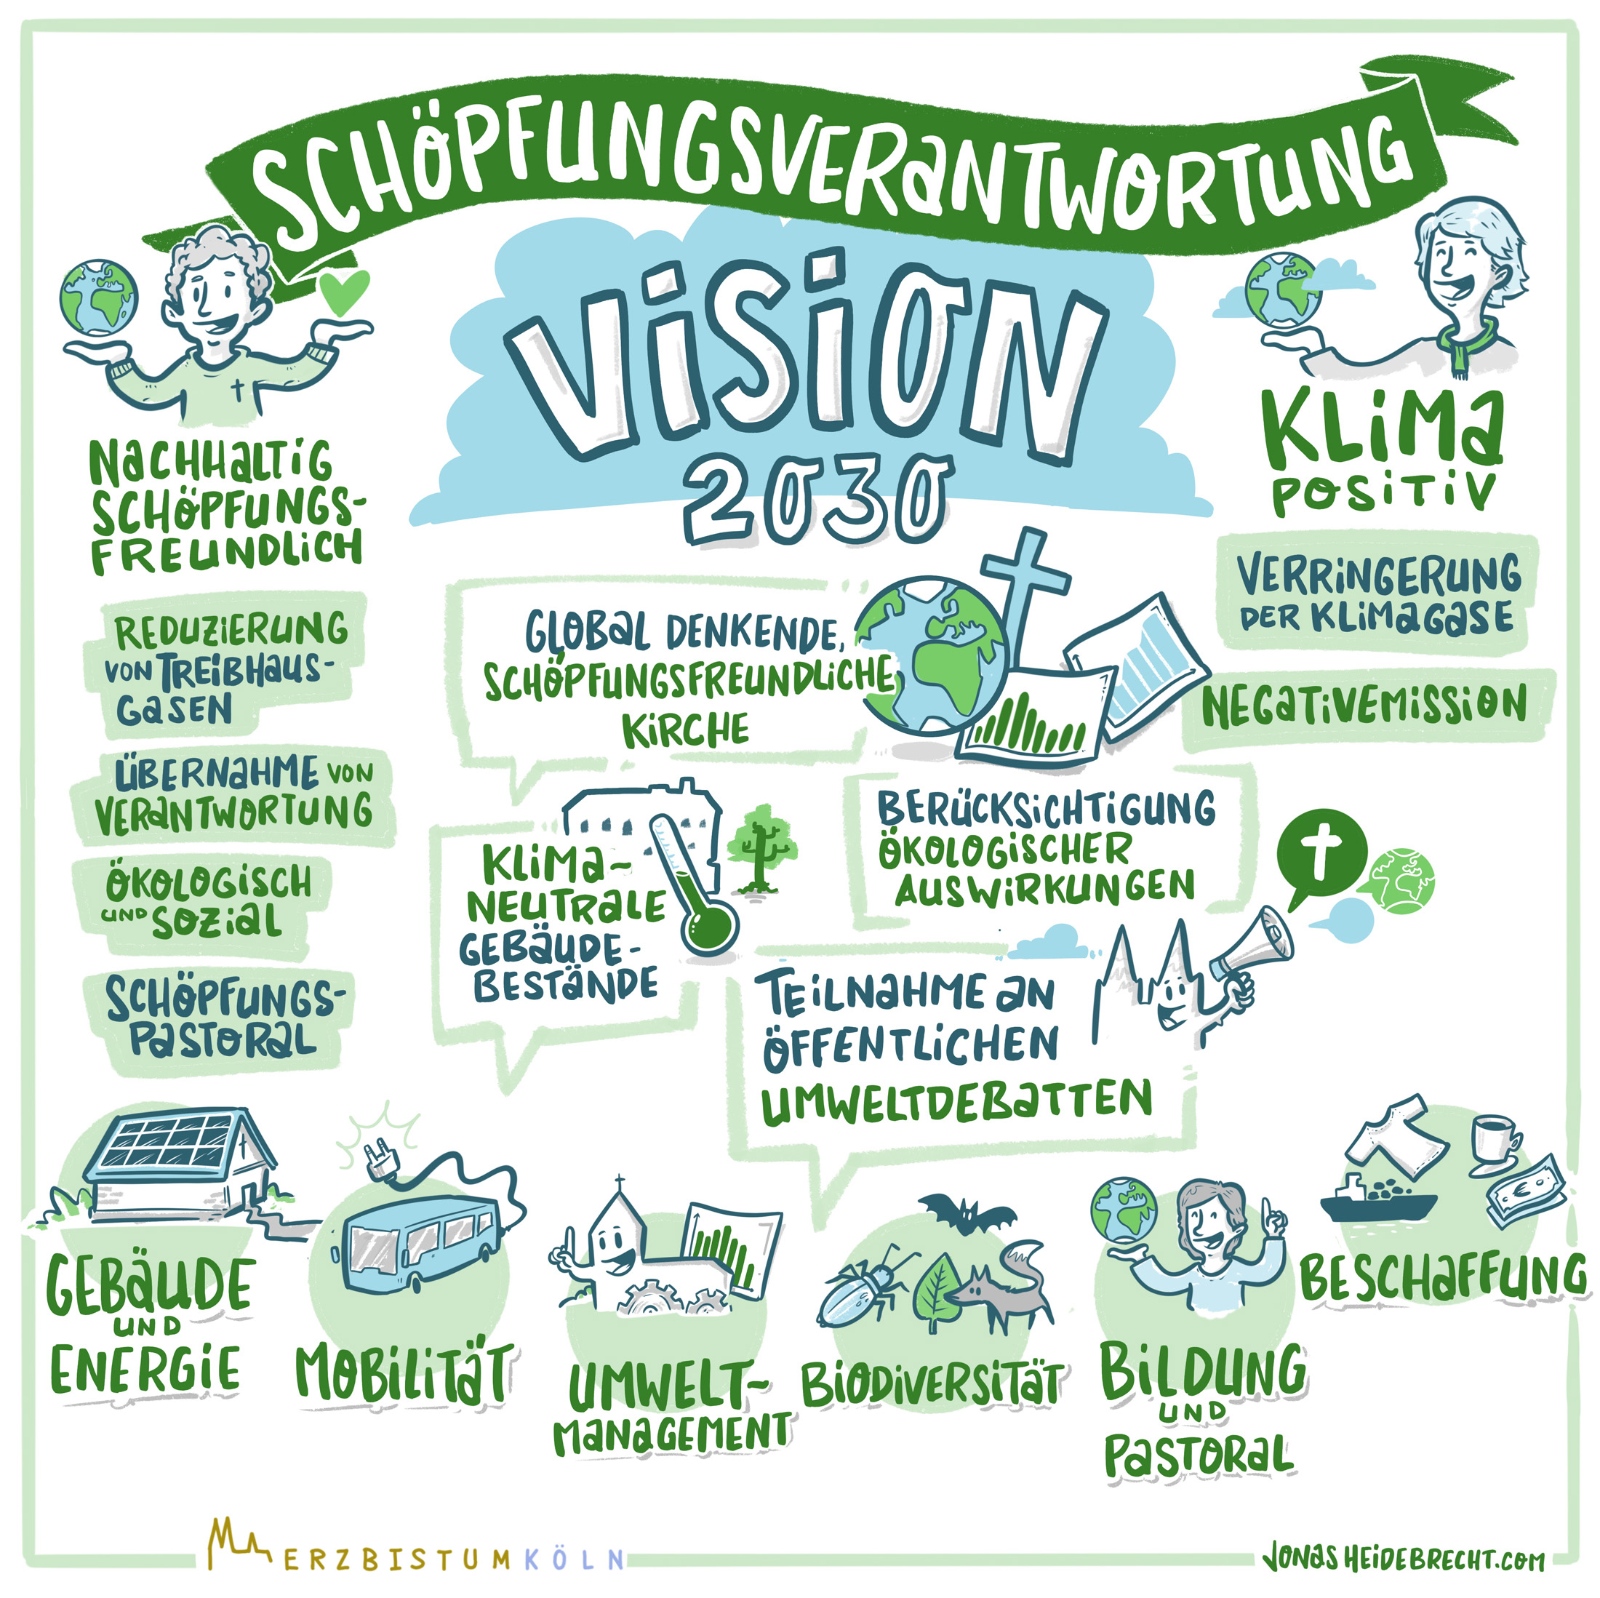 Ziele der Vision Schöpfungsverantwortung 2030 – Illustration 1/4